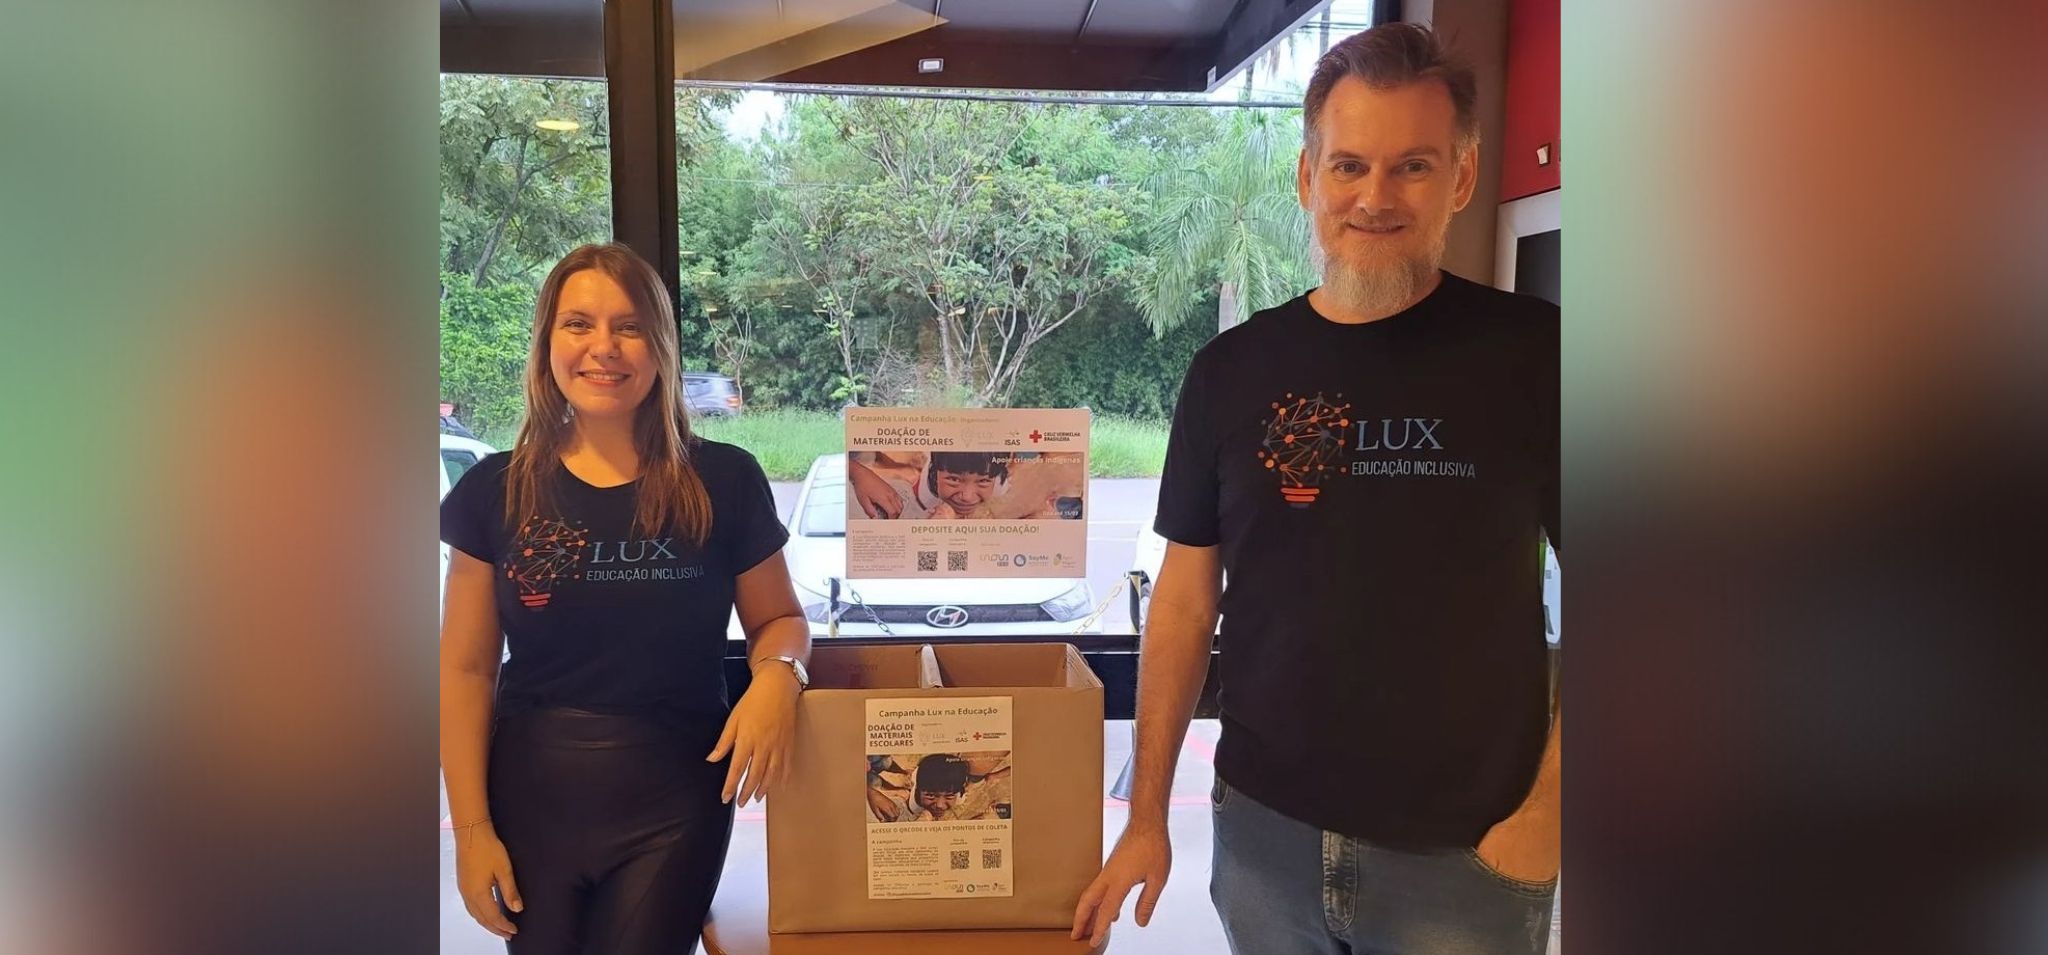 Os sócios da Lux Educação Inclusiva, Maibí Mascarenhas à esquerda da imagem e Paulo Kussler, à direita, com uma caixa de papelão para recebimento de doações no centro.